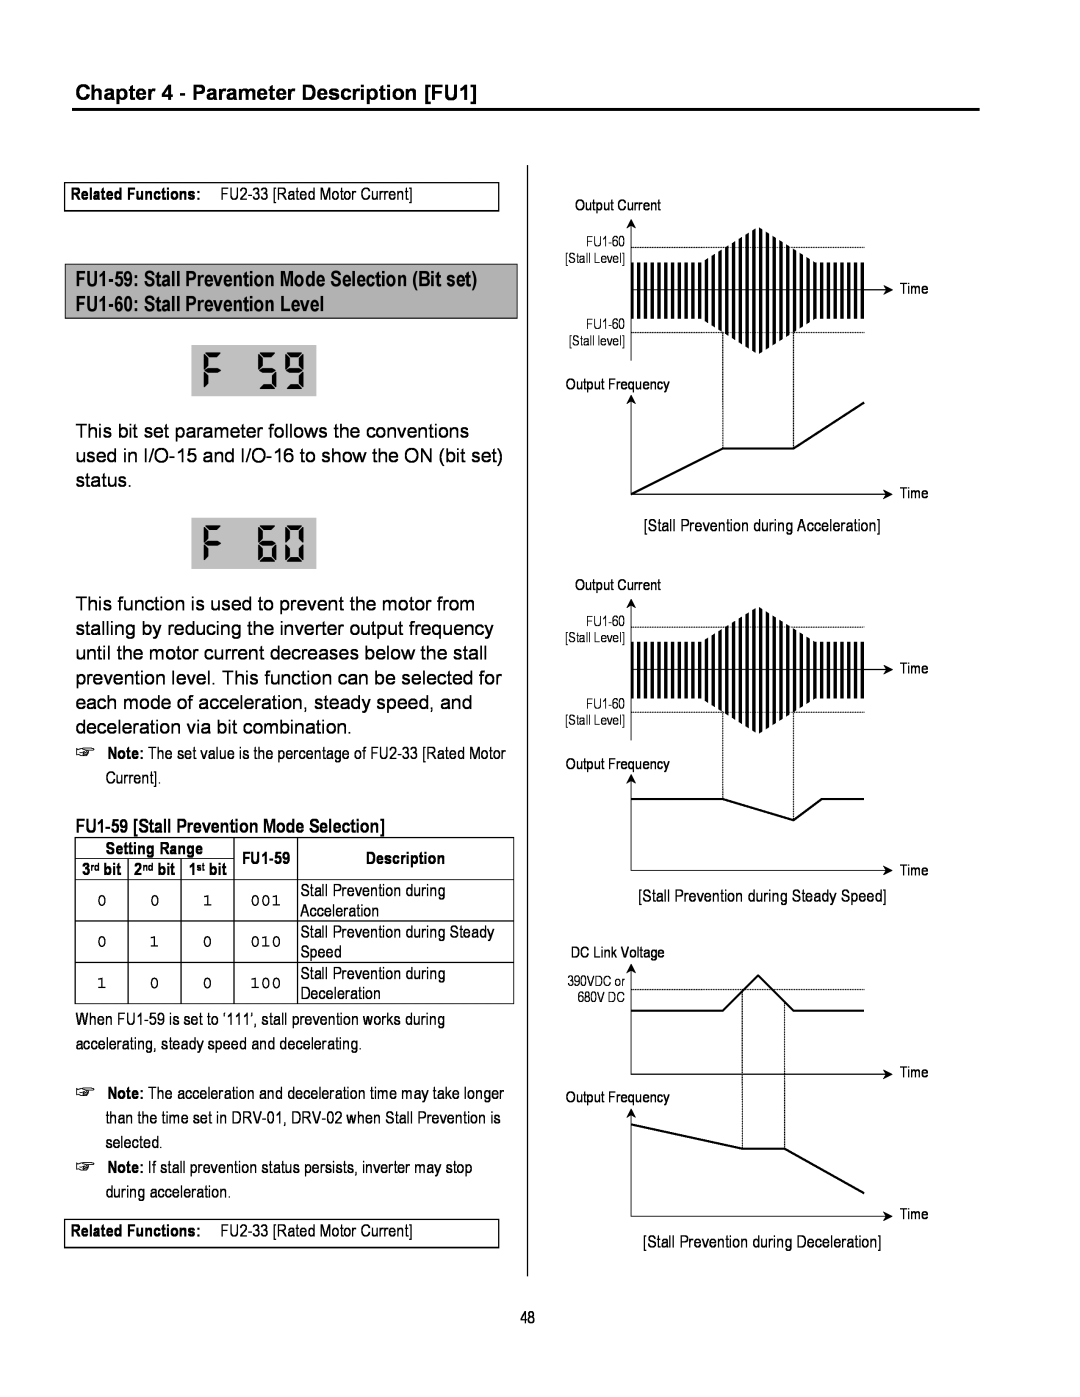 Cleveland Range inverter manual Parameter Description FU1, FU1-59 Stall Prevention Mode Selection Bit set 